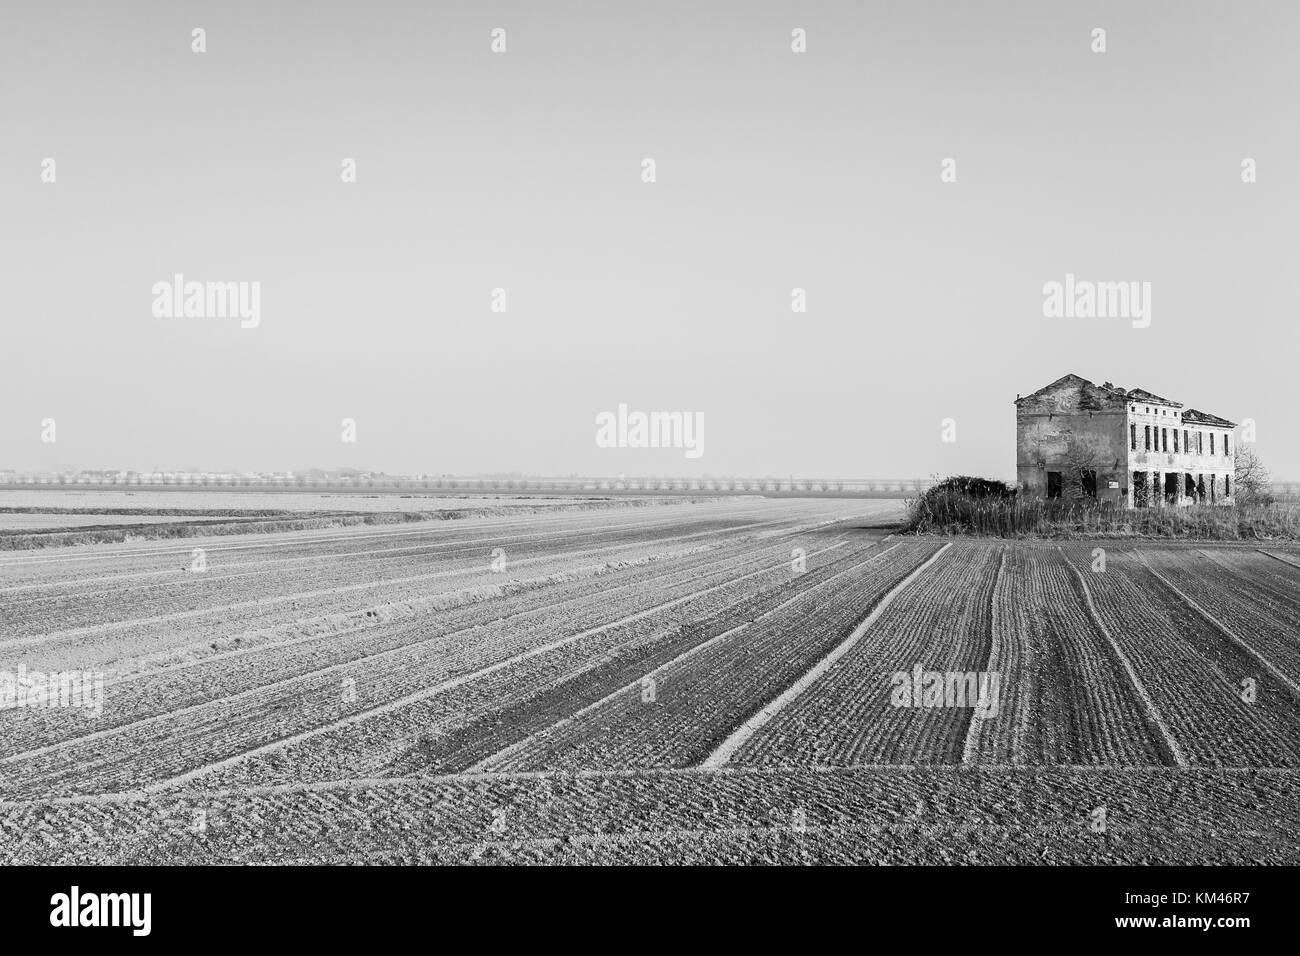 Paysage italien rurale à partir de la rivière Po lagoon.champs ensemencés avec des lignes de perspective. Entrepôt désaffecté. Modifié numériquement Image Banque D'Images